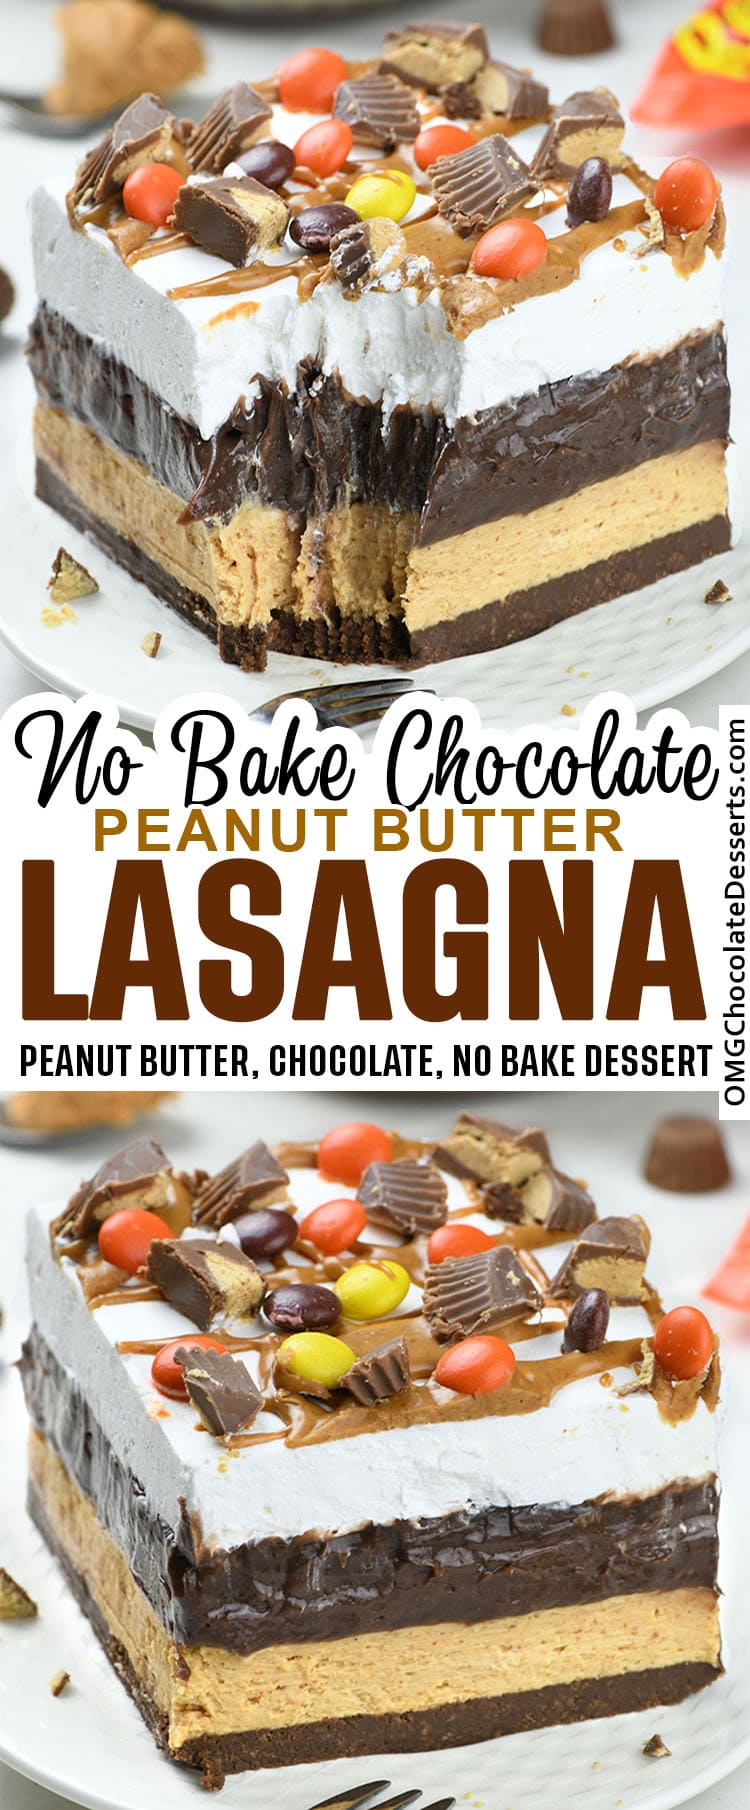 Chocolate Peanut Butter Lasagna